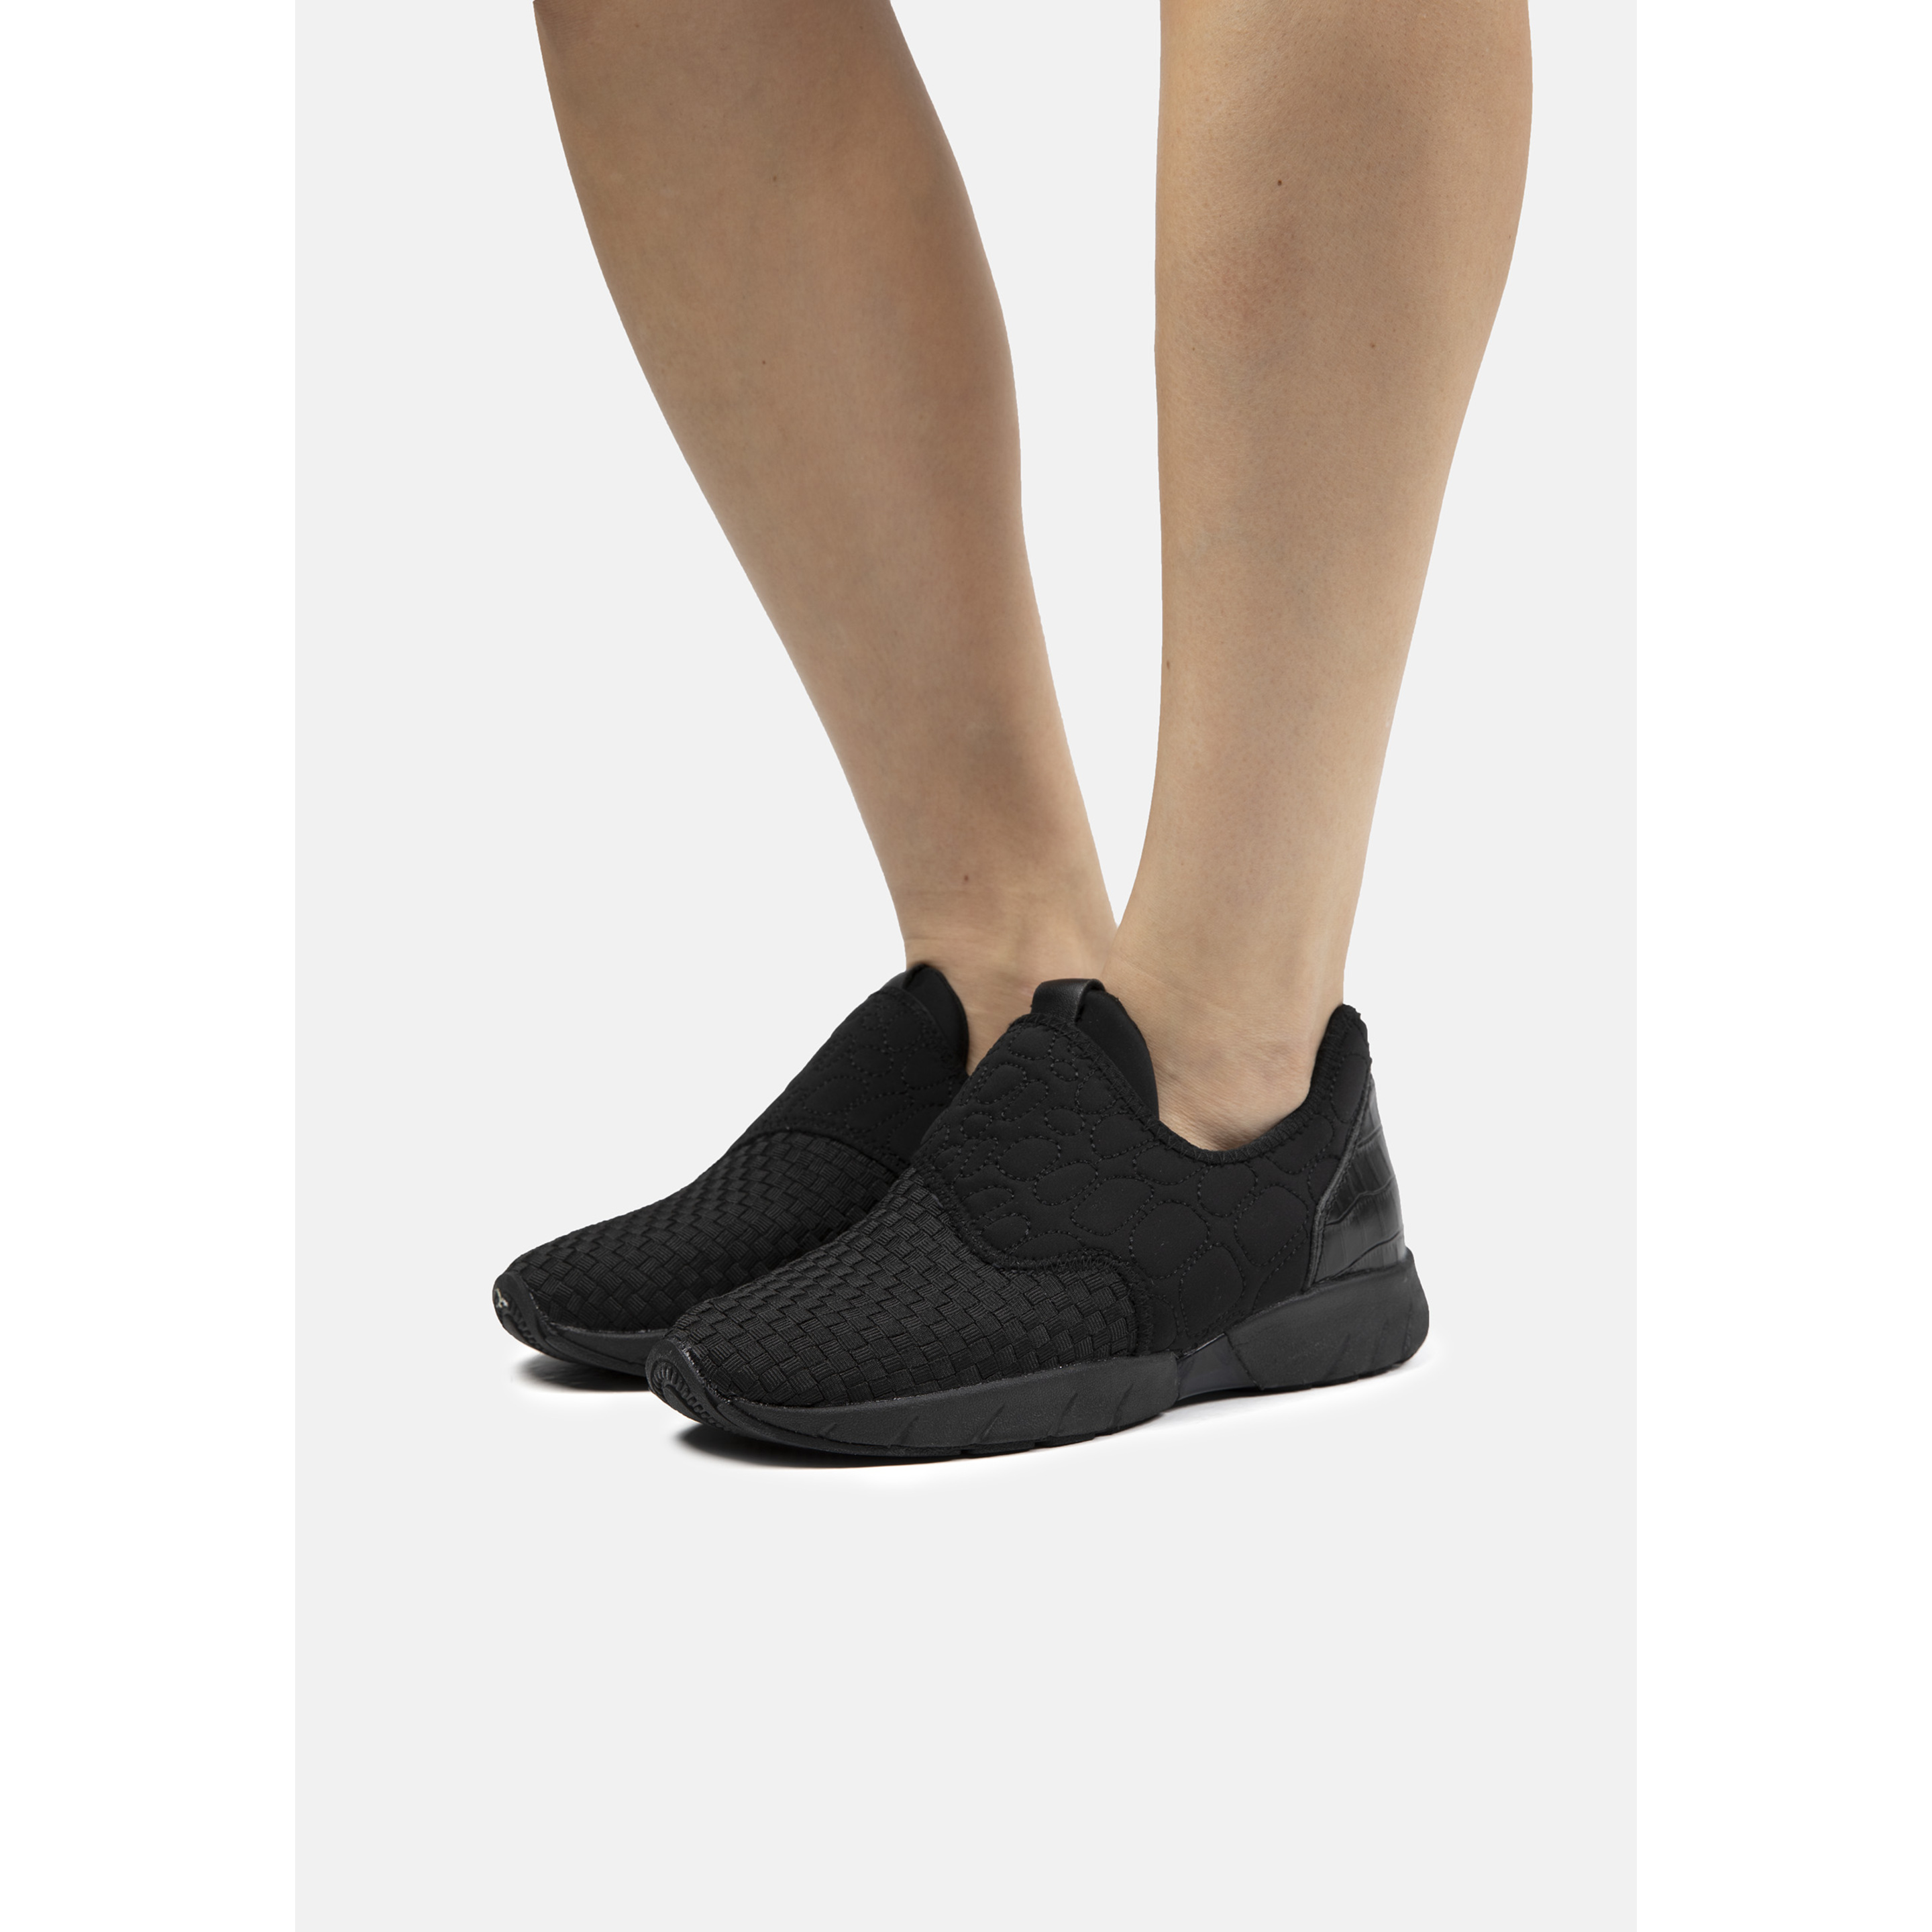 Zapatillas Deportivas De Mujer Bernie Mev De Textil En Negro (talla 35 A 42) - Negro - Sneakers, Zapato Urbano,memory Foam  MKP